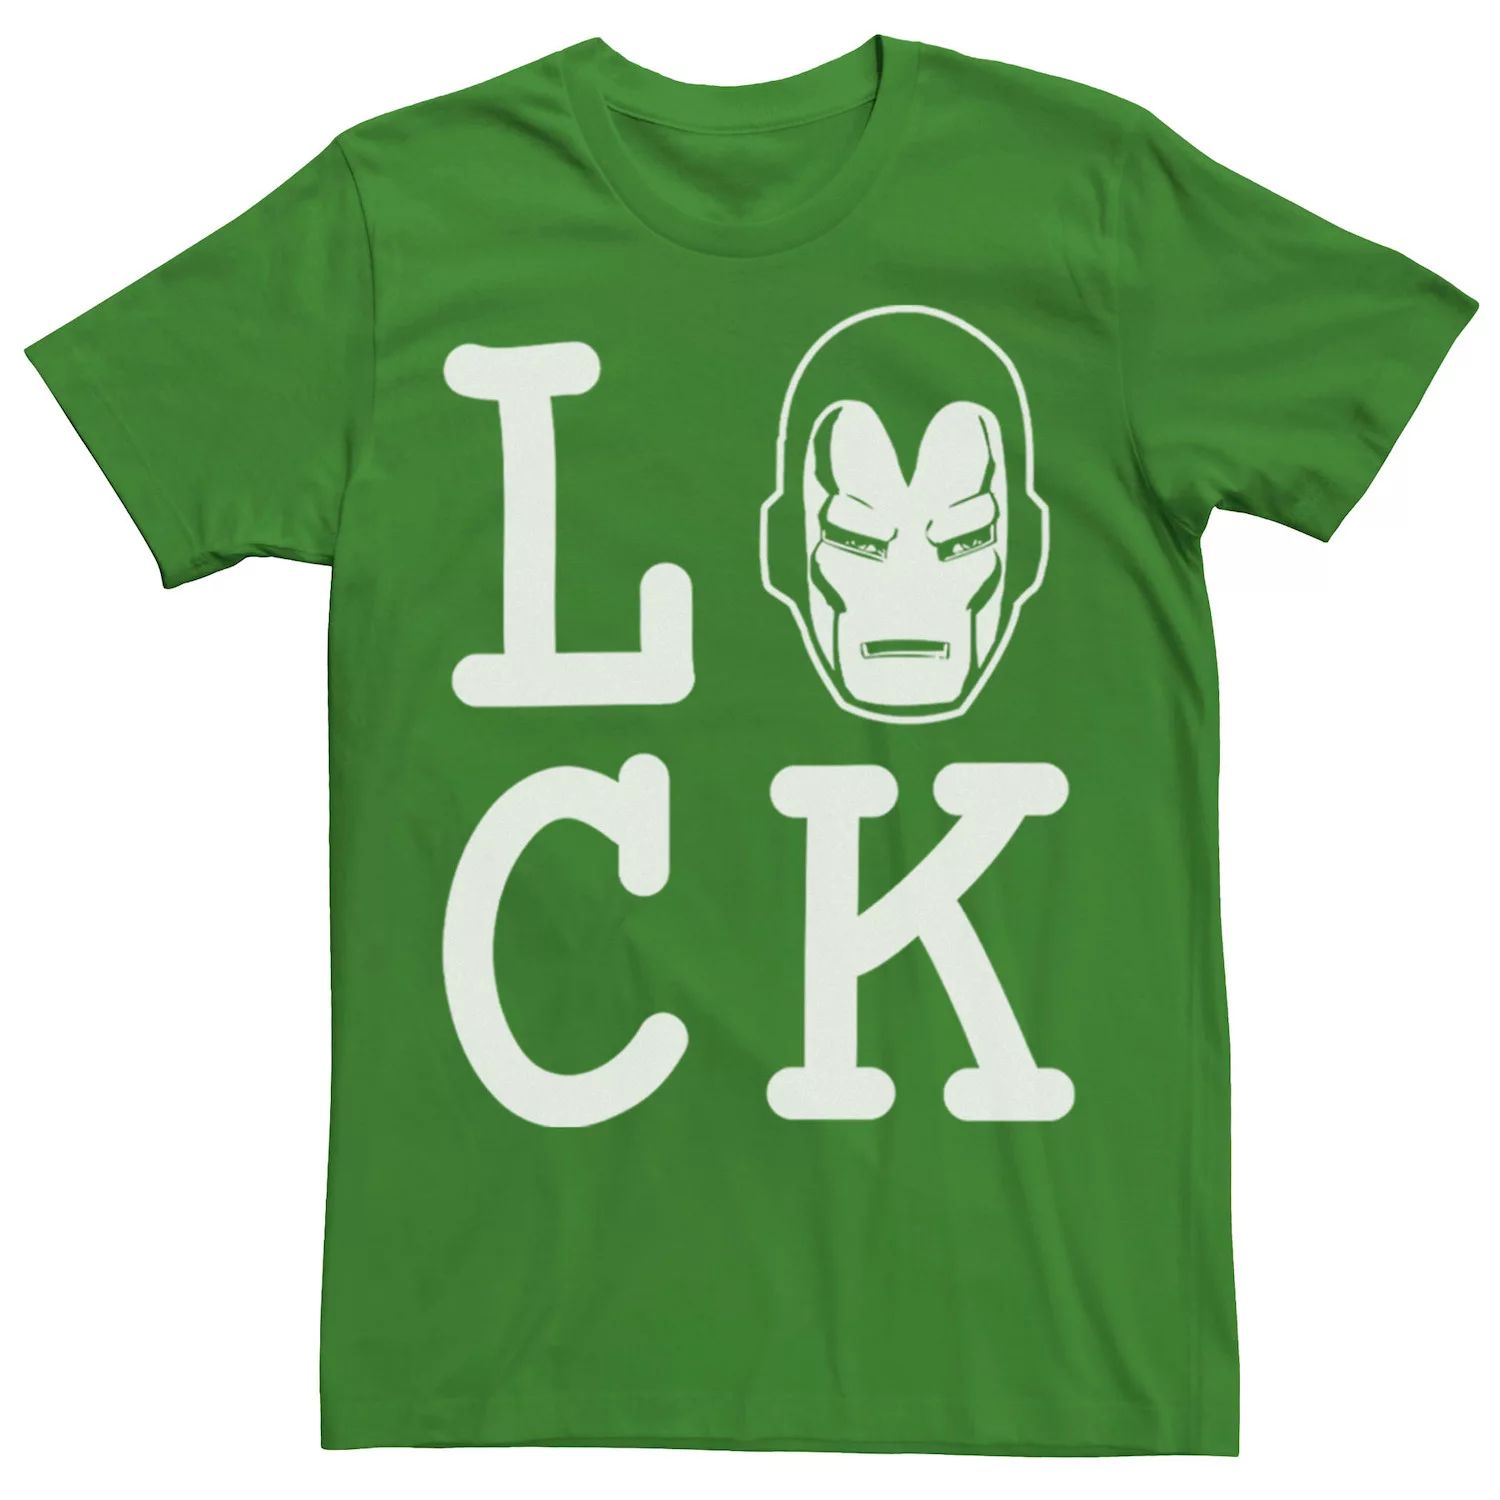 Мужская футболка Iron Man Lucky с надписью ко Дню Святого Патрика Marvel мужская футболка с надписью hulk lucky ко дню святого патрика marvel